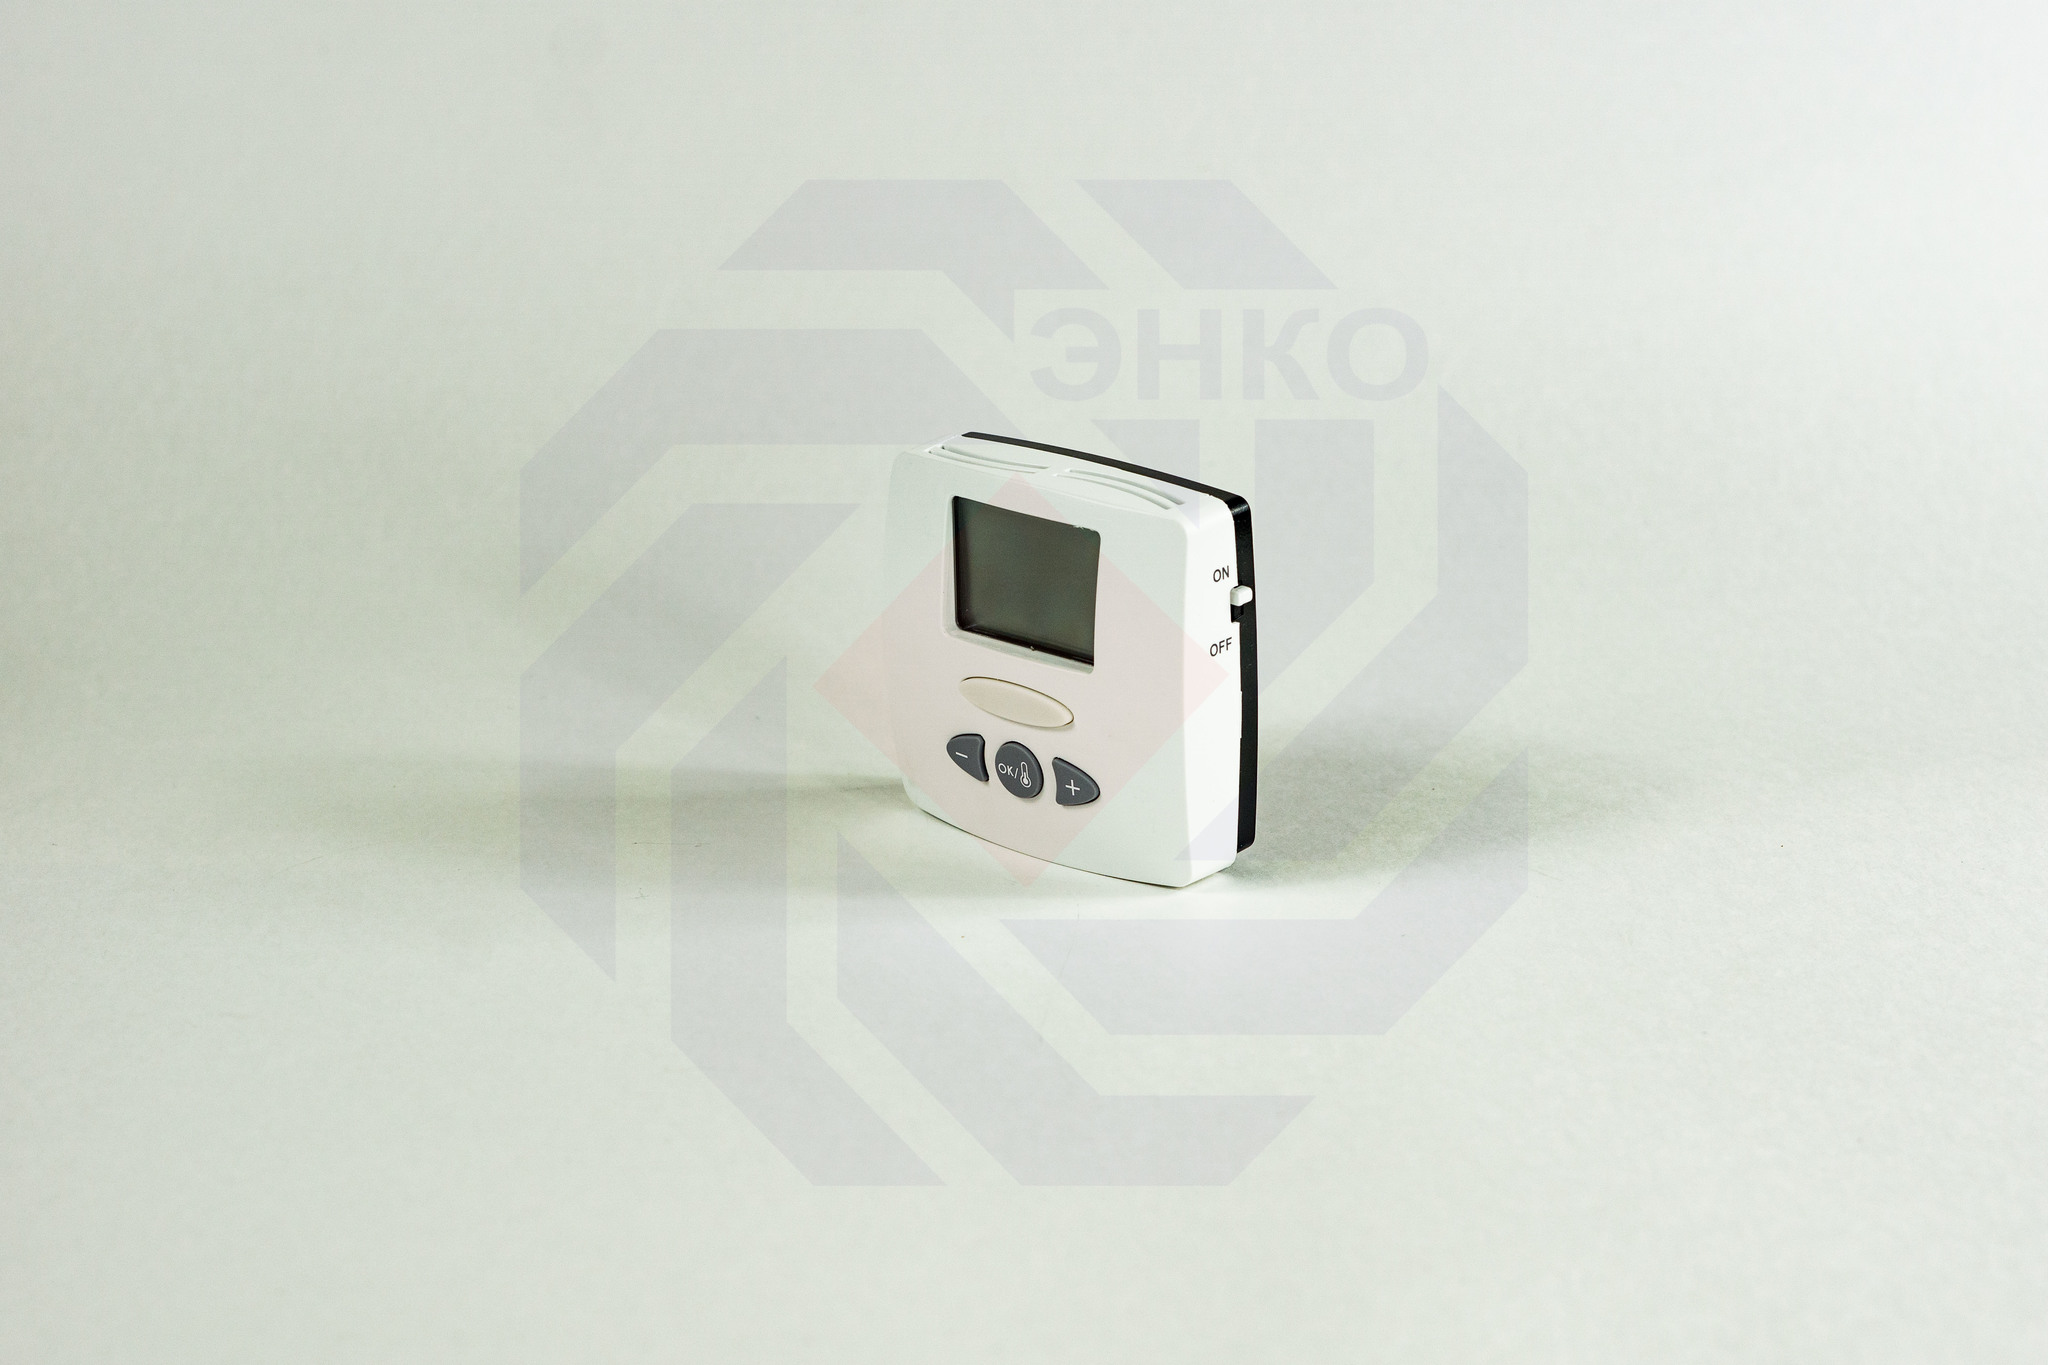 Термостат комнатный WATTS WFHT-LCD с датчиком температуры пола